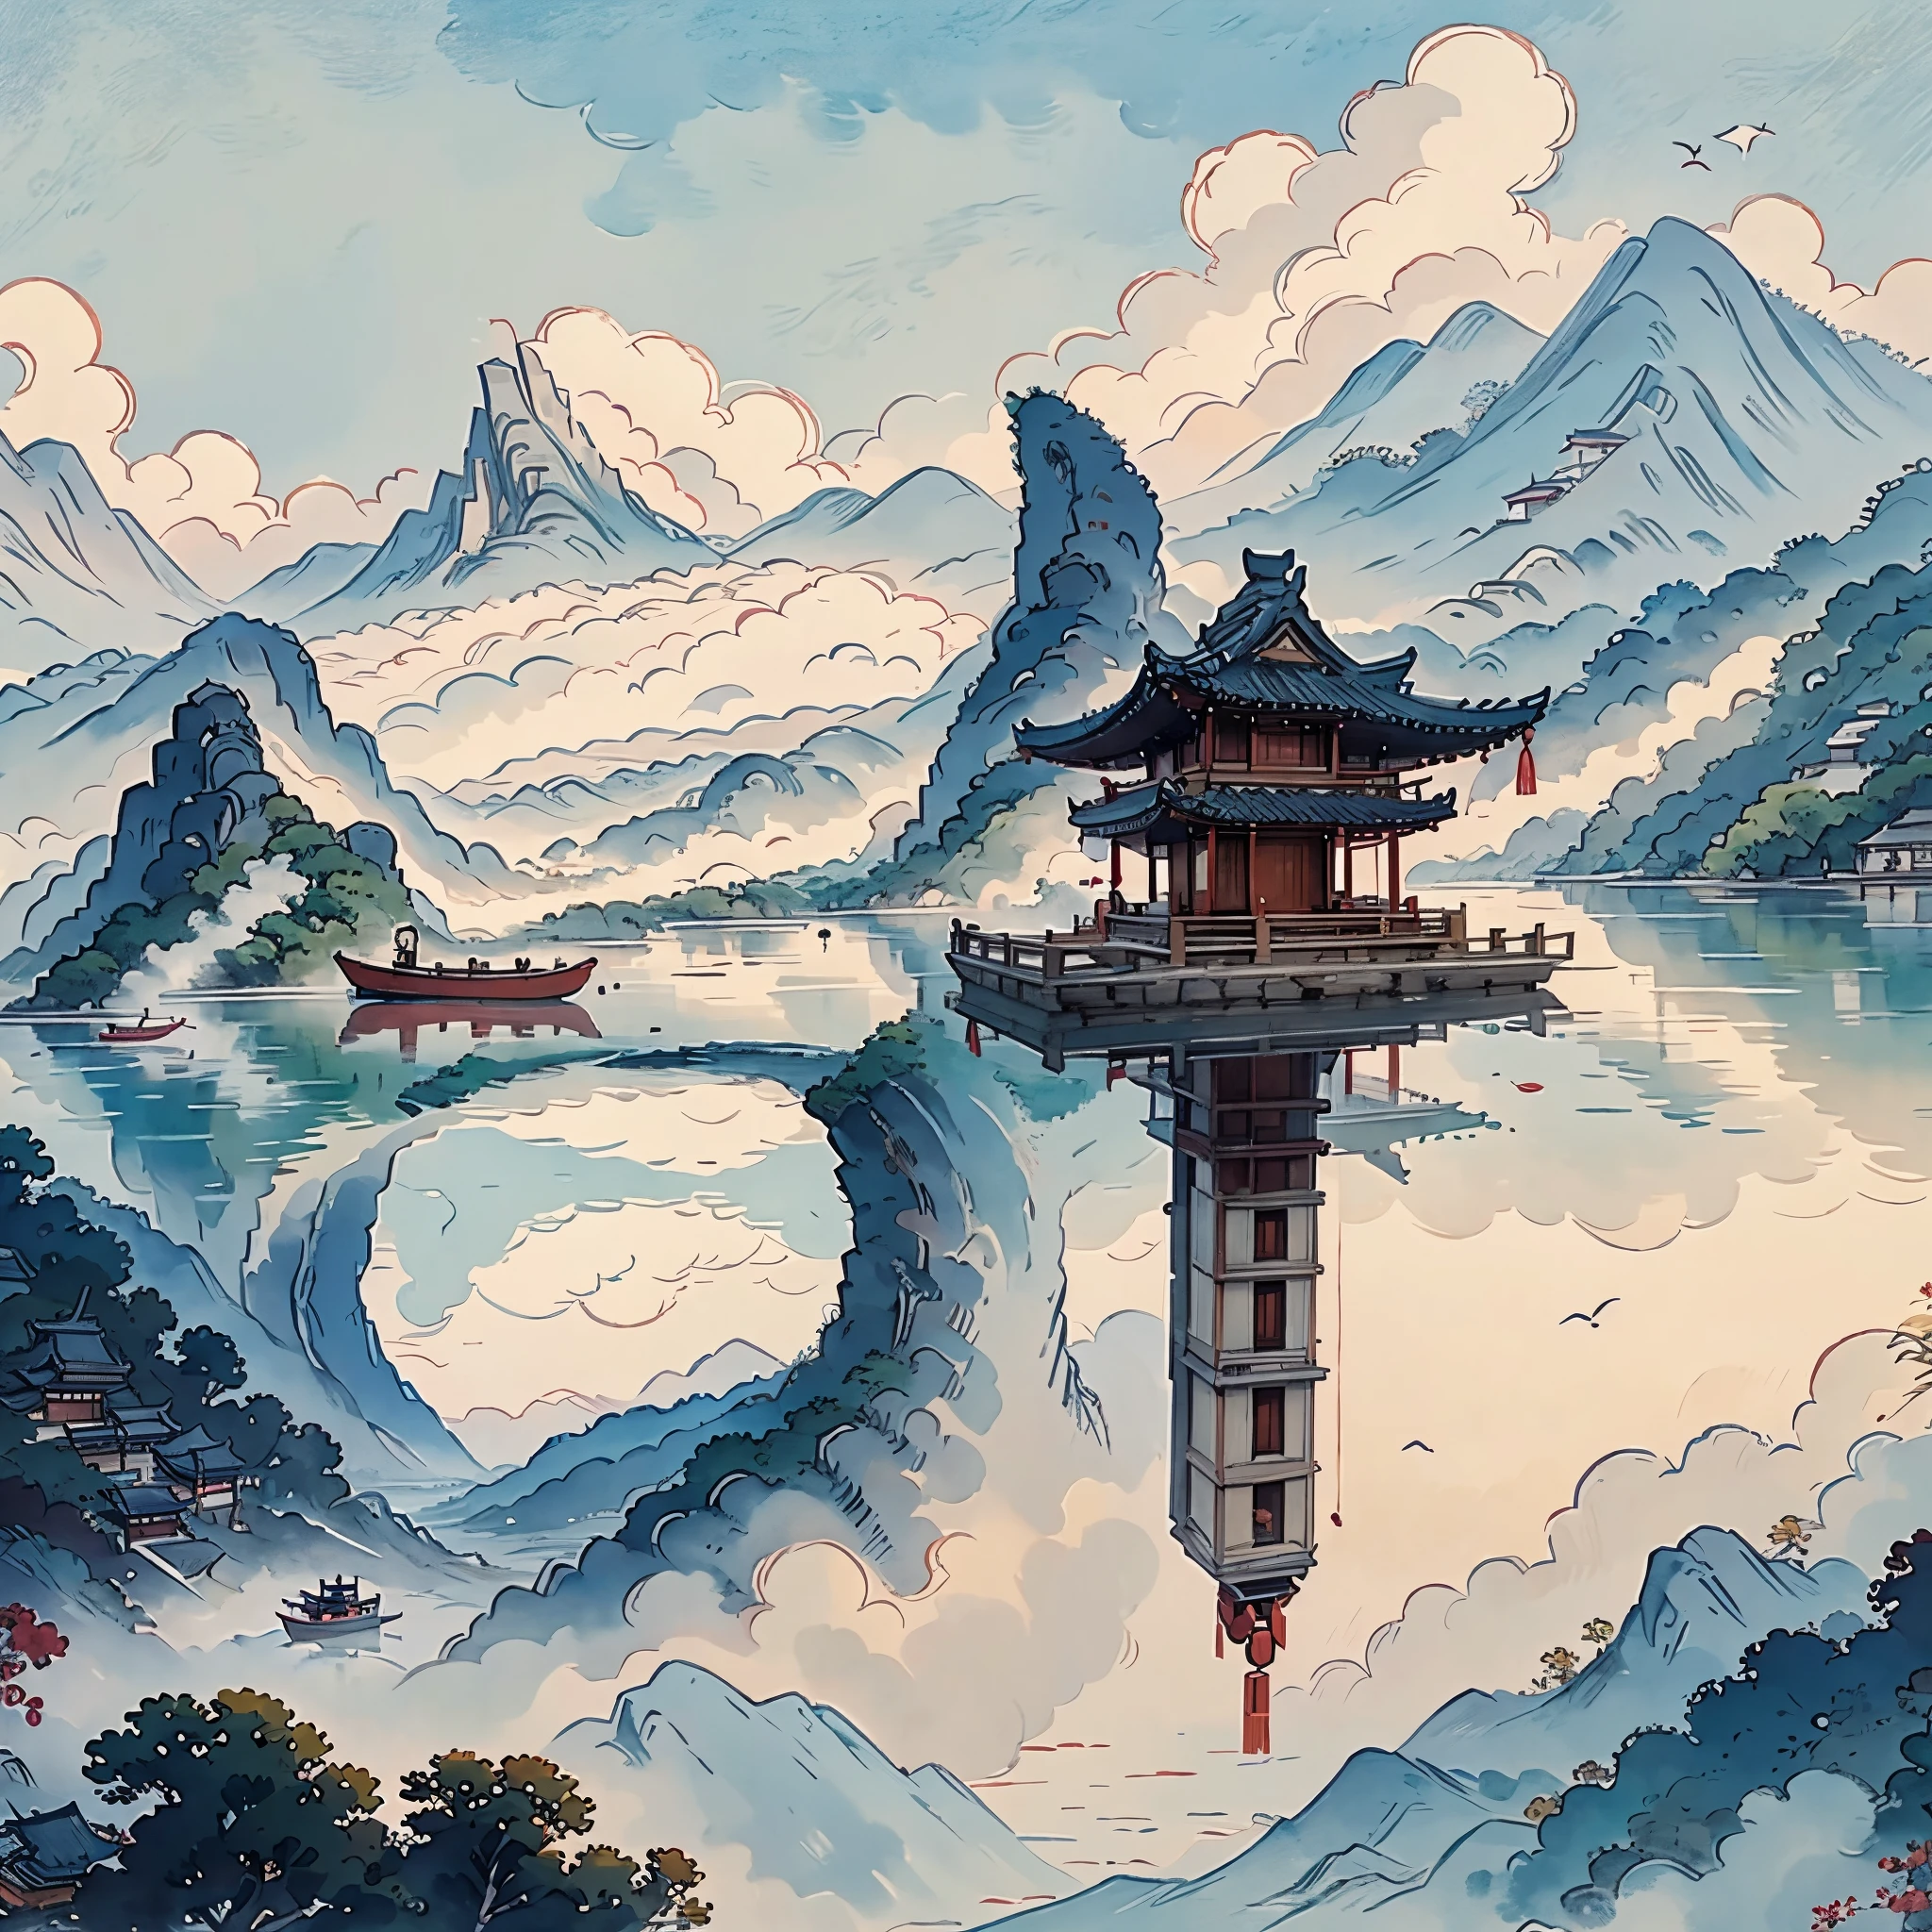 小島上有一座寶塔的山畫, 中國水彩風格, 中國畫風格, 寶塔的數位繪畫, 中國風景, 中國傳統水彩畫, 中國畫, 日本藝術風格, 高細部水彩8K, 高度細緻的水彩 8 k, 詳細繪畫 4 k, 作者：英雄, 日本畫, 作者：Qu Leile，光與影